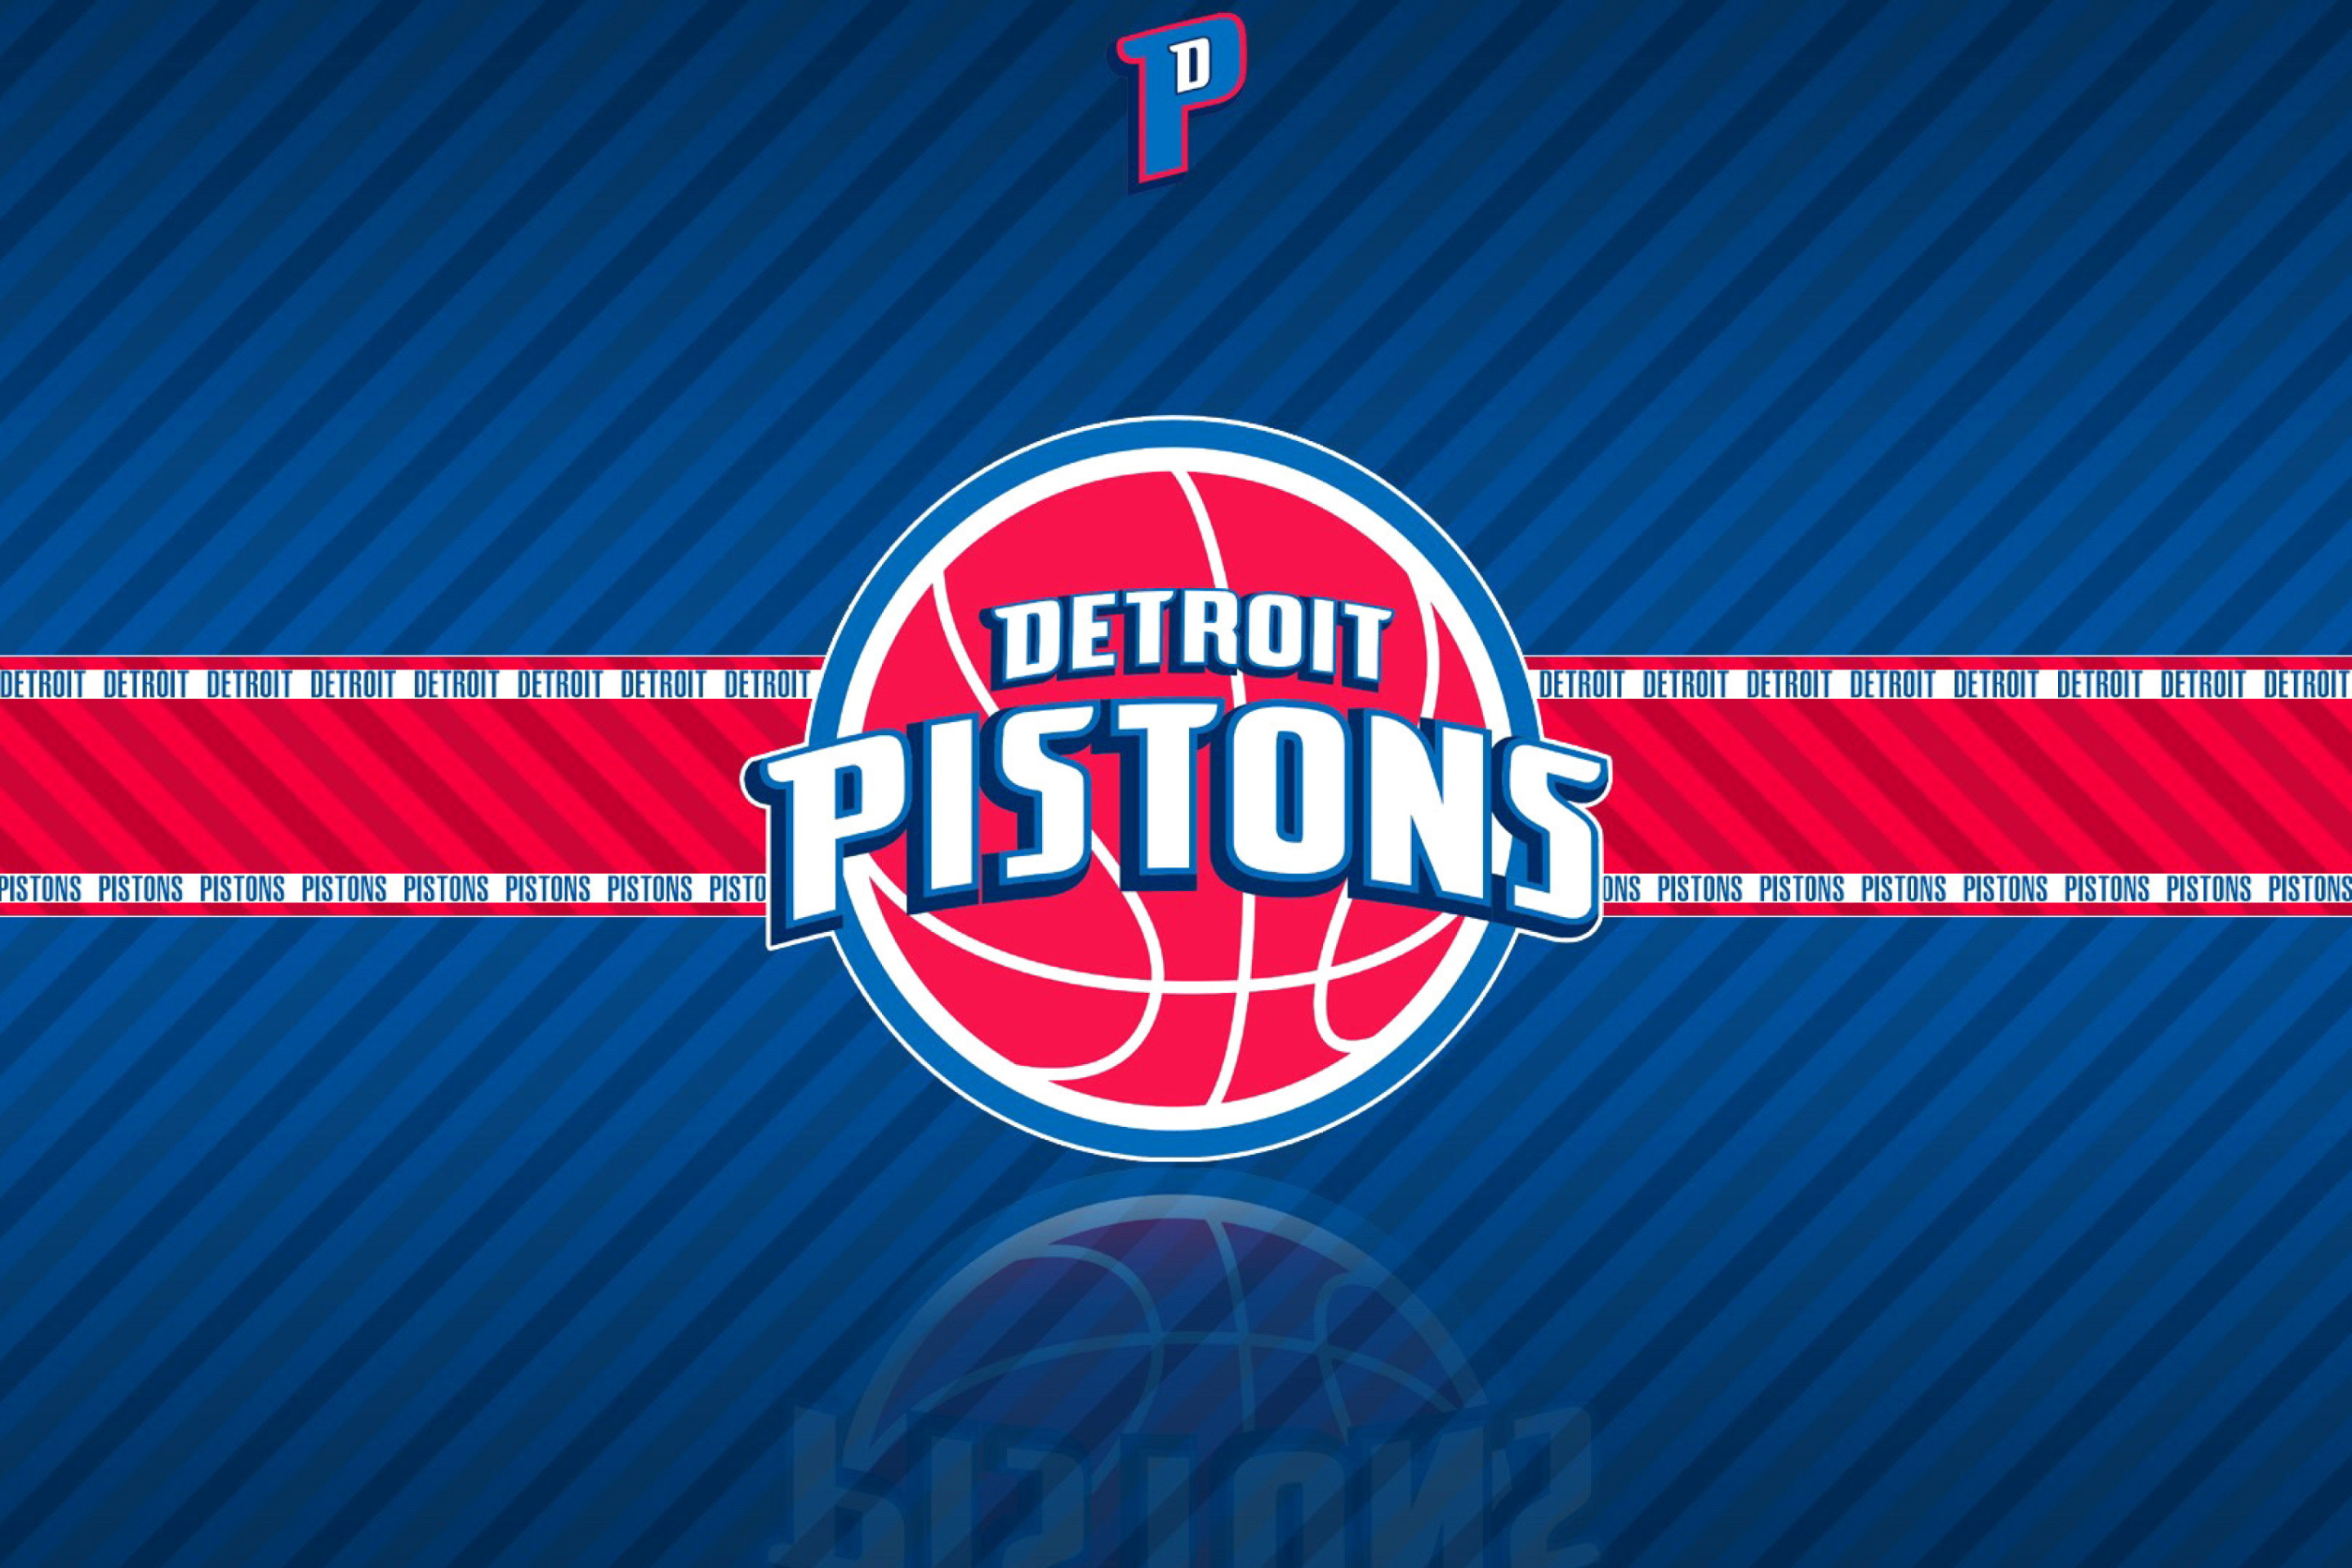 Detroit pistons. Детройт Пистонс логотип. Детройт Пистонс 90. НБА – Детройт Пистонс. Детройт логотип НБА.